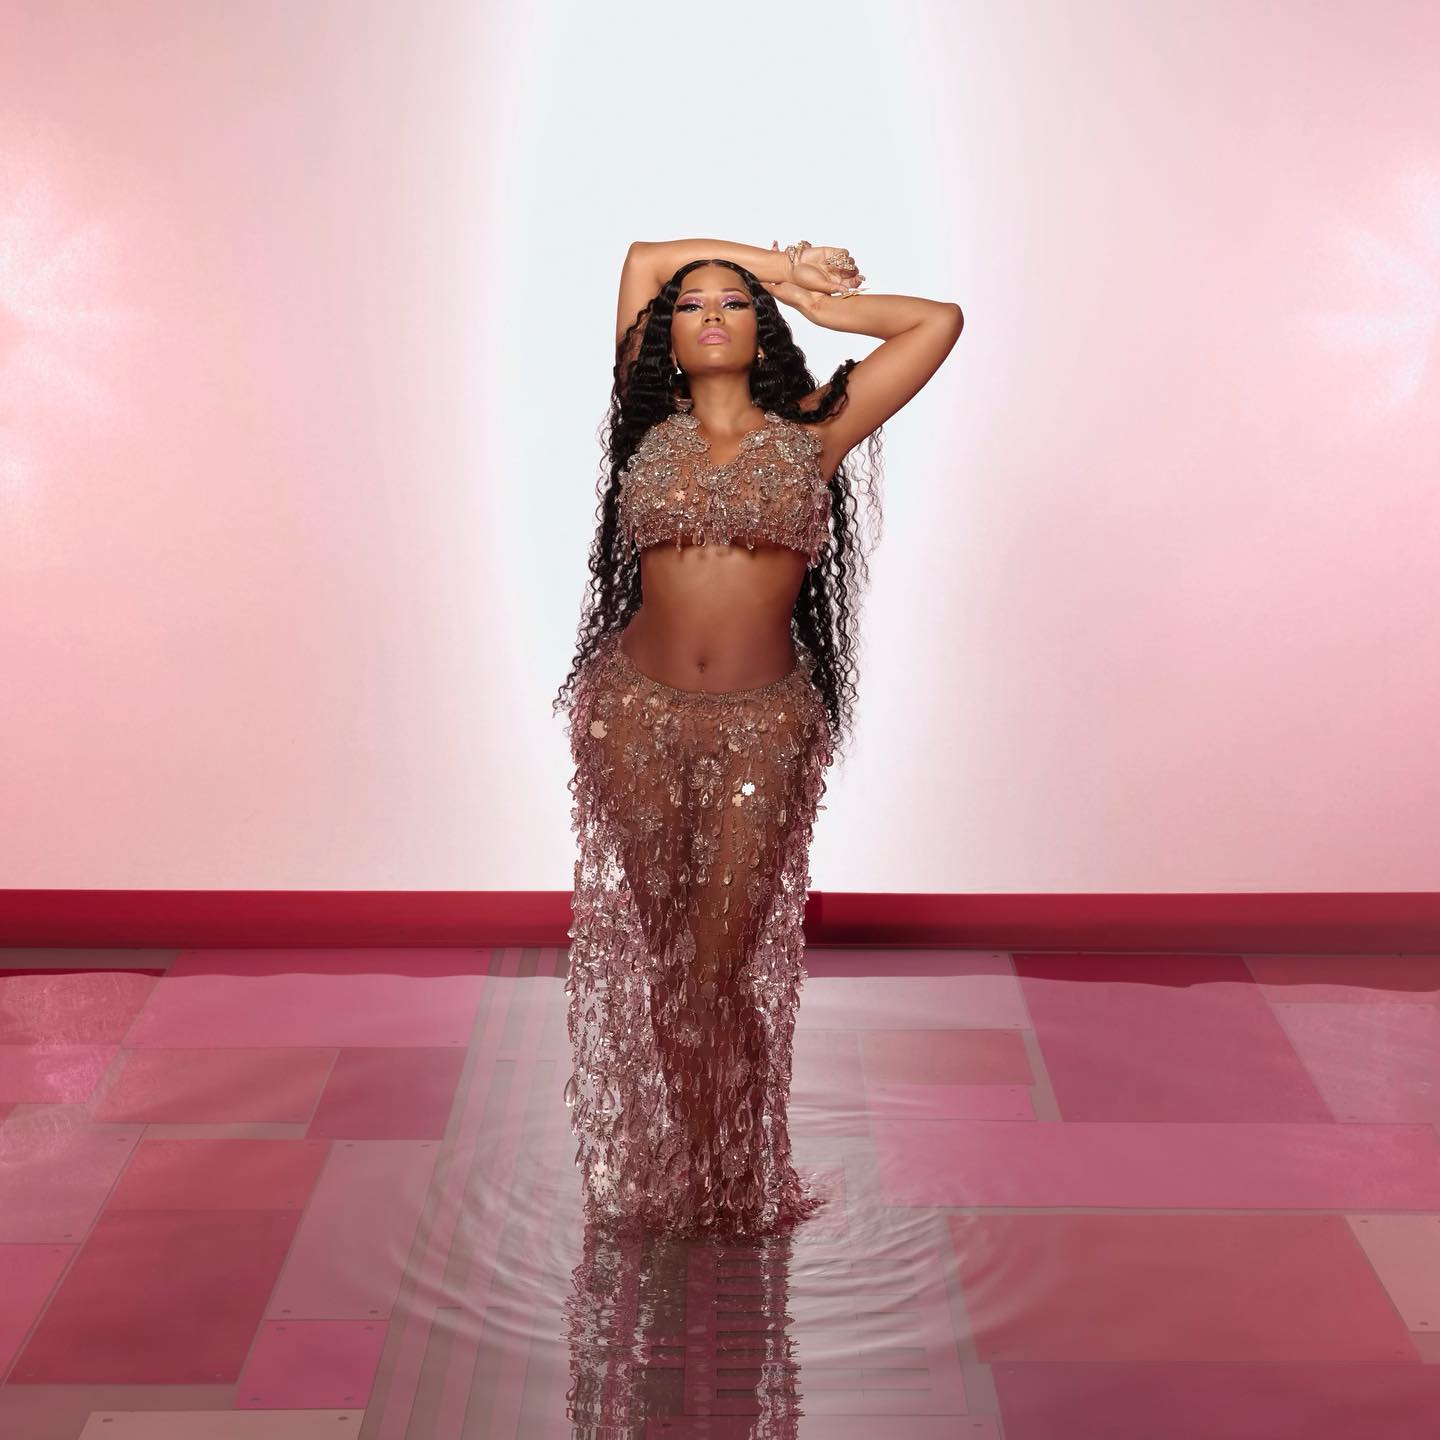 Nicki Minaj makes a comeback with new single ‘Last Time I Saw You’